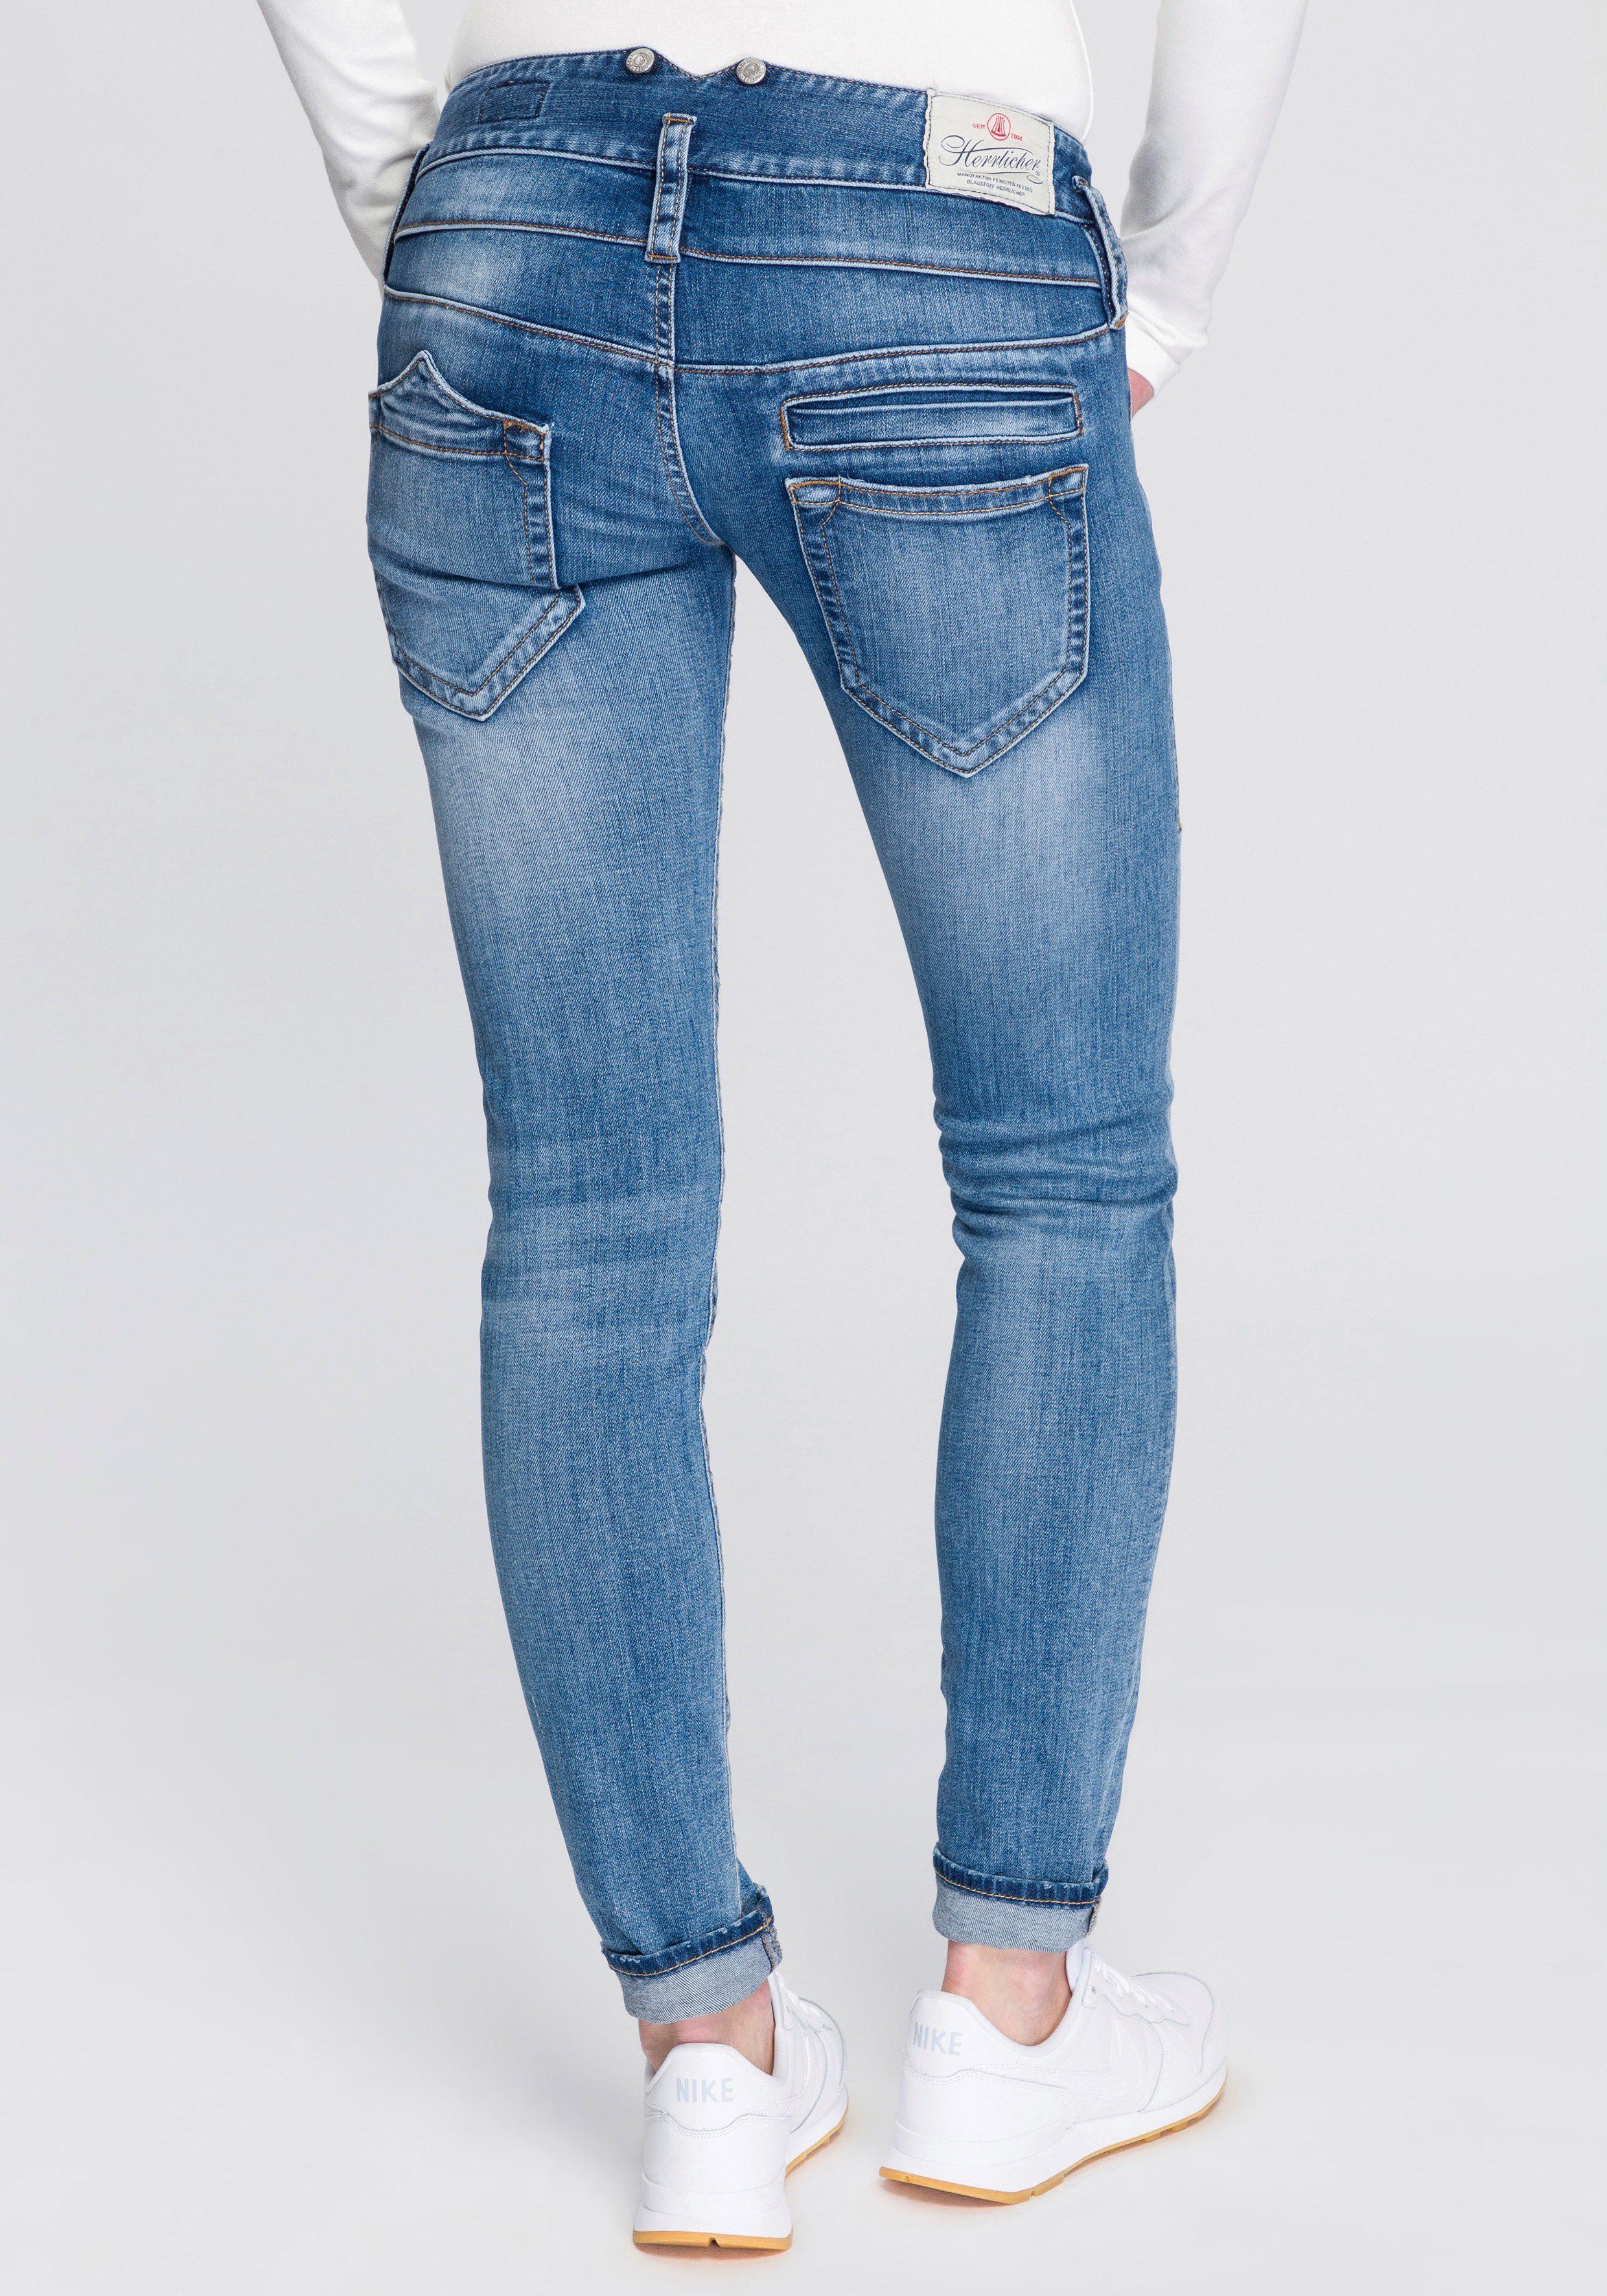 Herrlicher Slim-fit-Jeans PITCH SLIM ORGANIC umweltfreundlich dank Kitotex  Technology, Röhrenjeans "Pitch Slim Organic" von Herrlicher